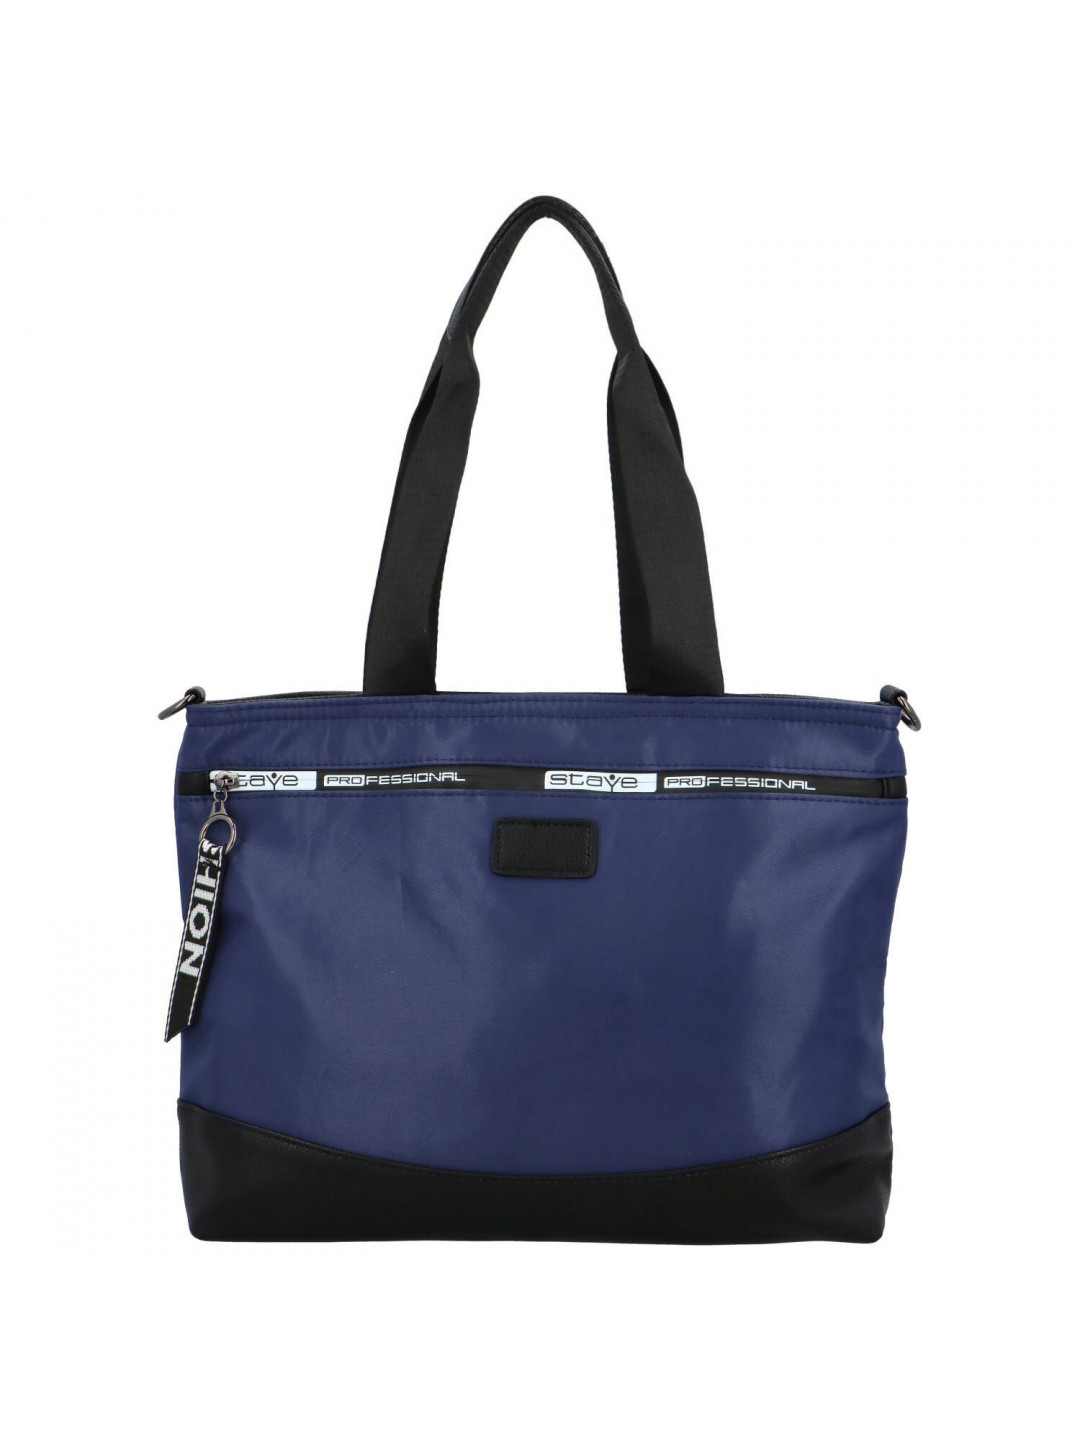 Sportovní textilní dámská kabelka Angélicia tmavě modrá